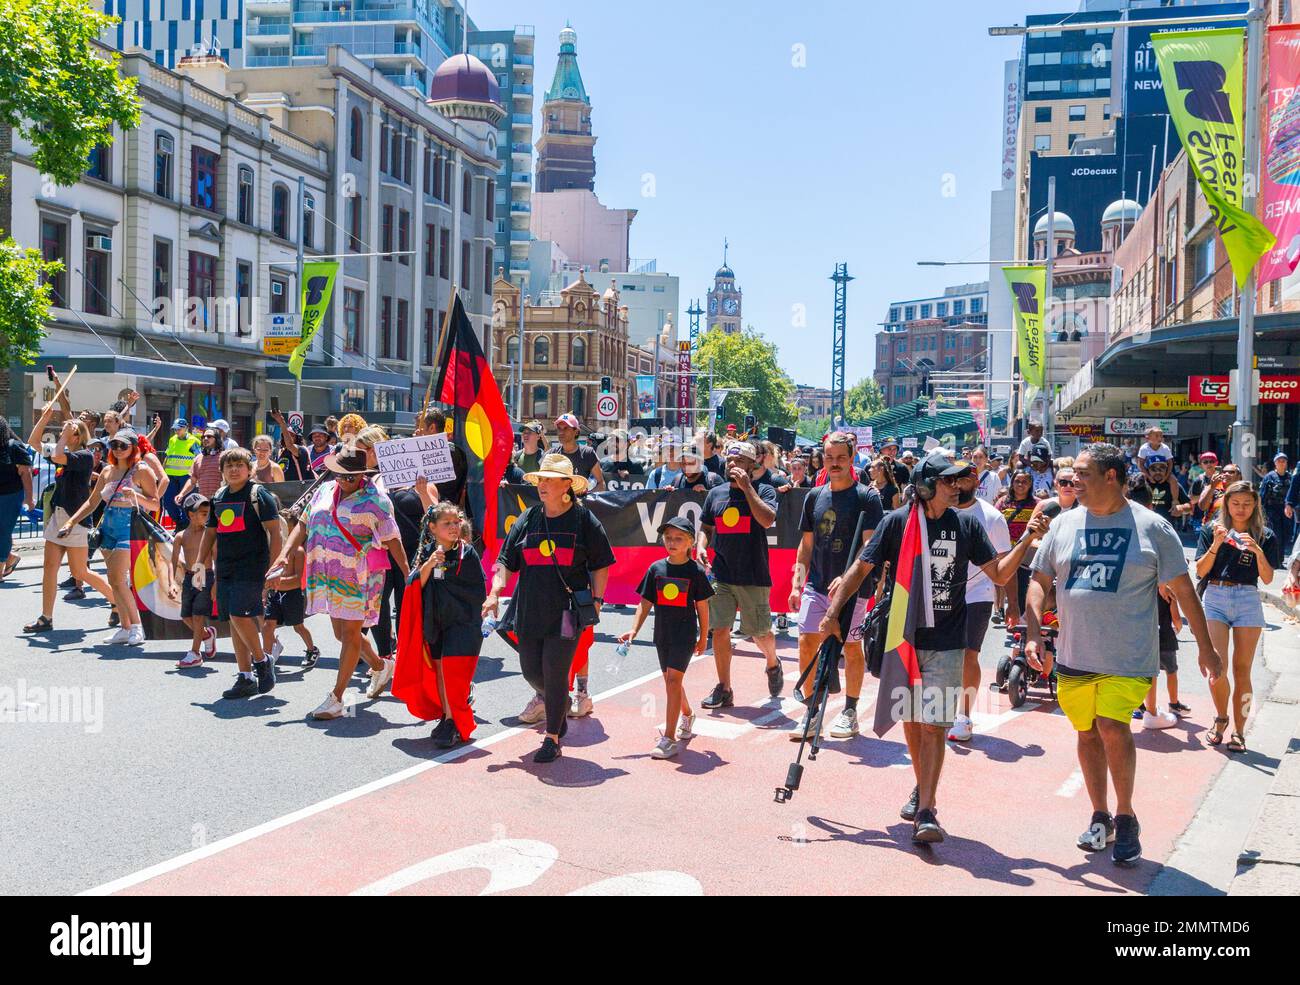 Da Australien seinen jährlichen Nationalfeiertag, den Australia Day, am 26. Januar jedes Jahres abhält, wird als Reaktion darauf ein indigener „Invasion Day“-Protest abgehalten. Stockfoto